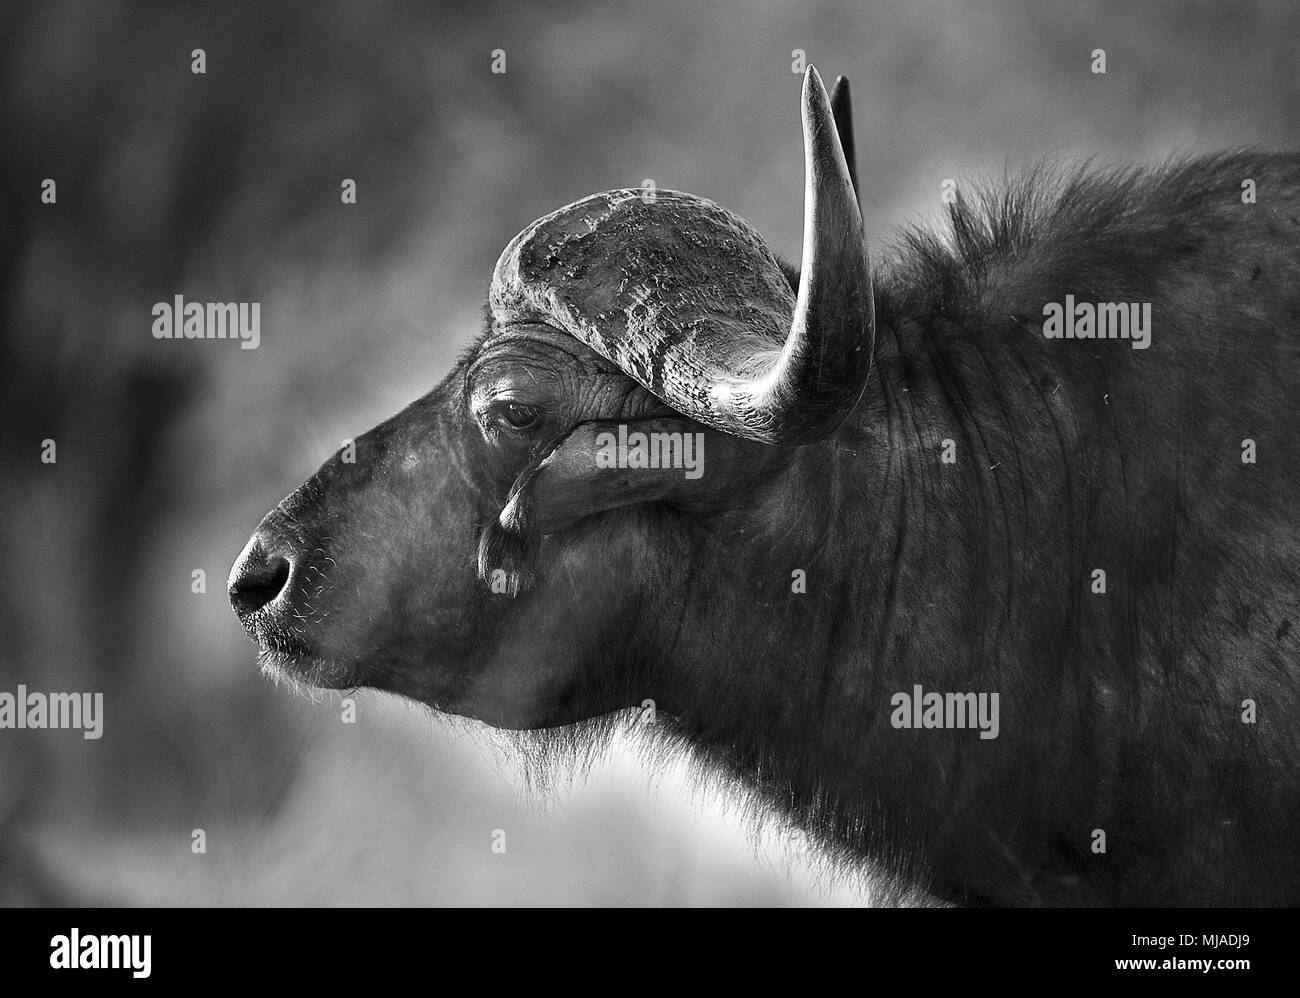 Buffle d'Afrique (Syncerus caffer). Côté sur portrait en noir et blanc. Mana Pools National Park, Zimbabwe. Banque D'Images